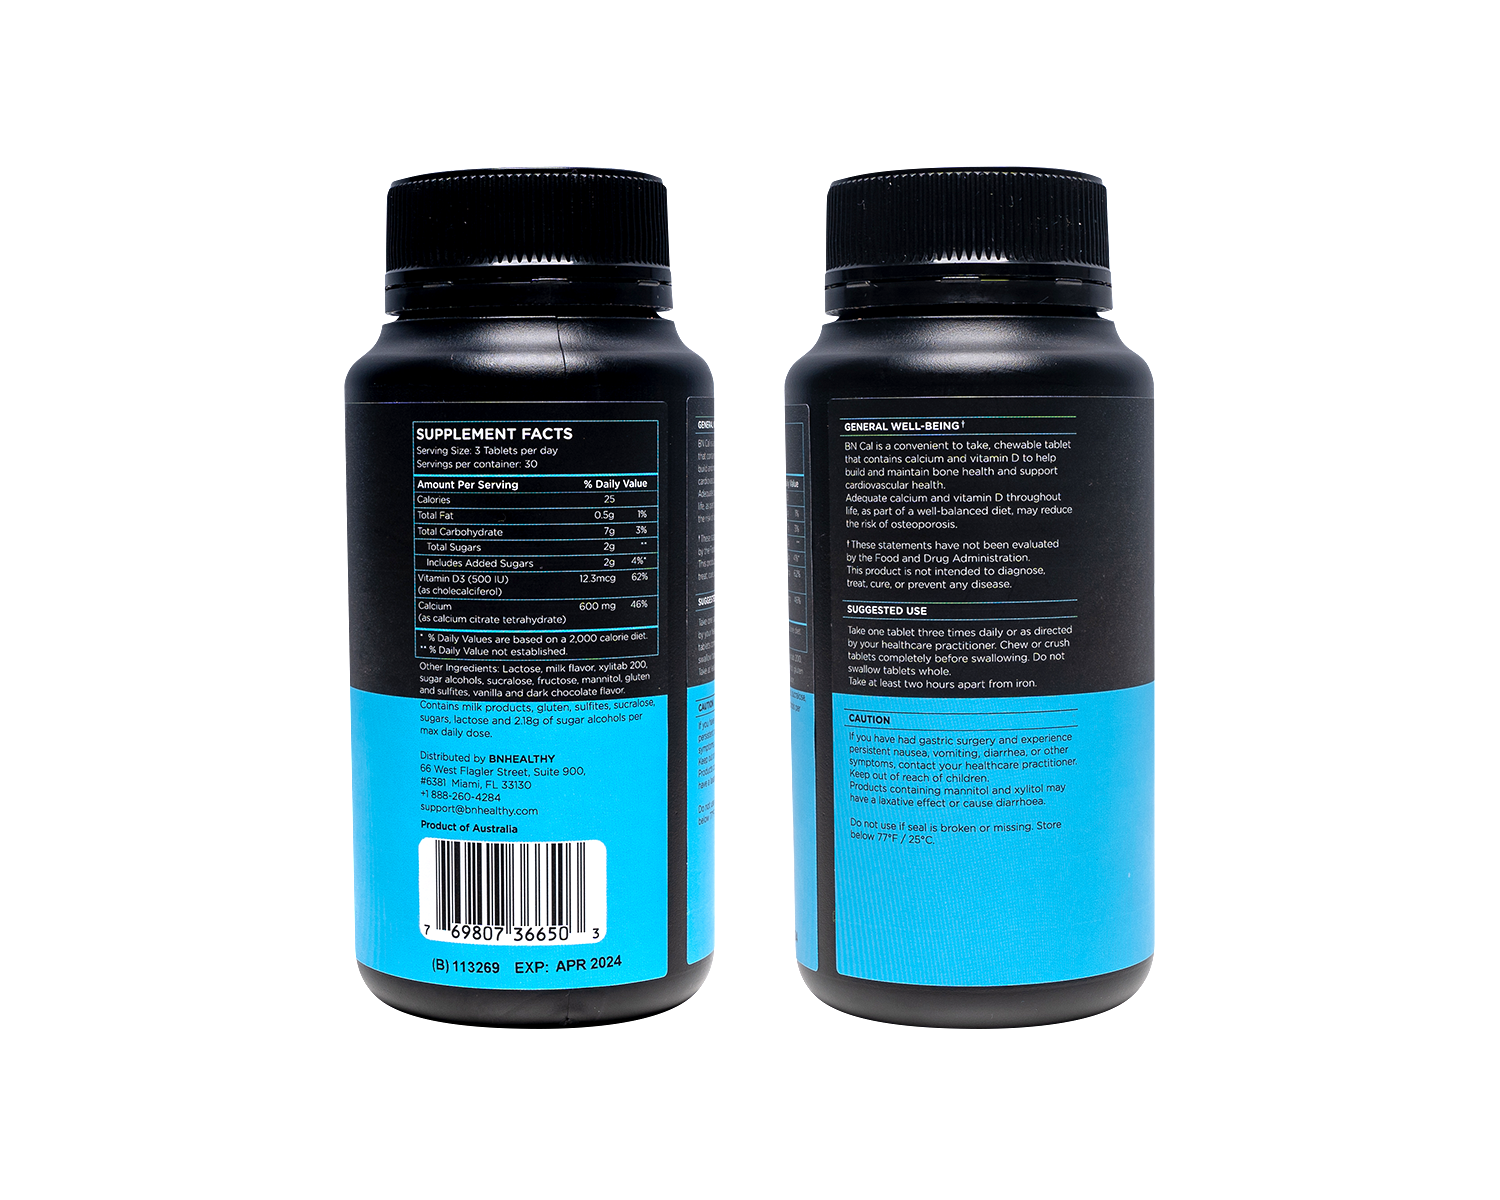 BN Chews - Chewable Bariatric Multivitamins  & BN Cal